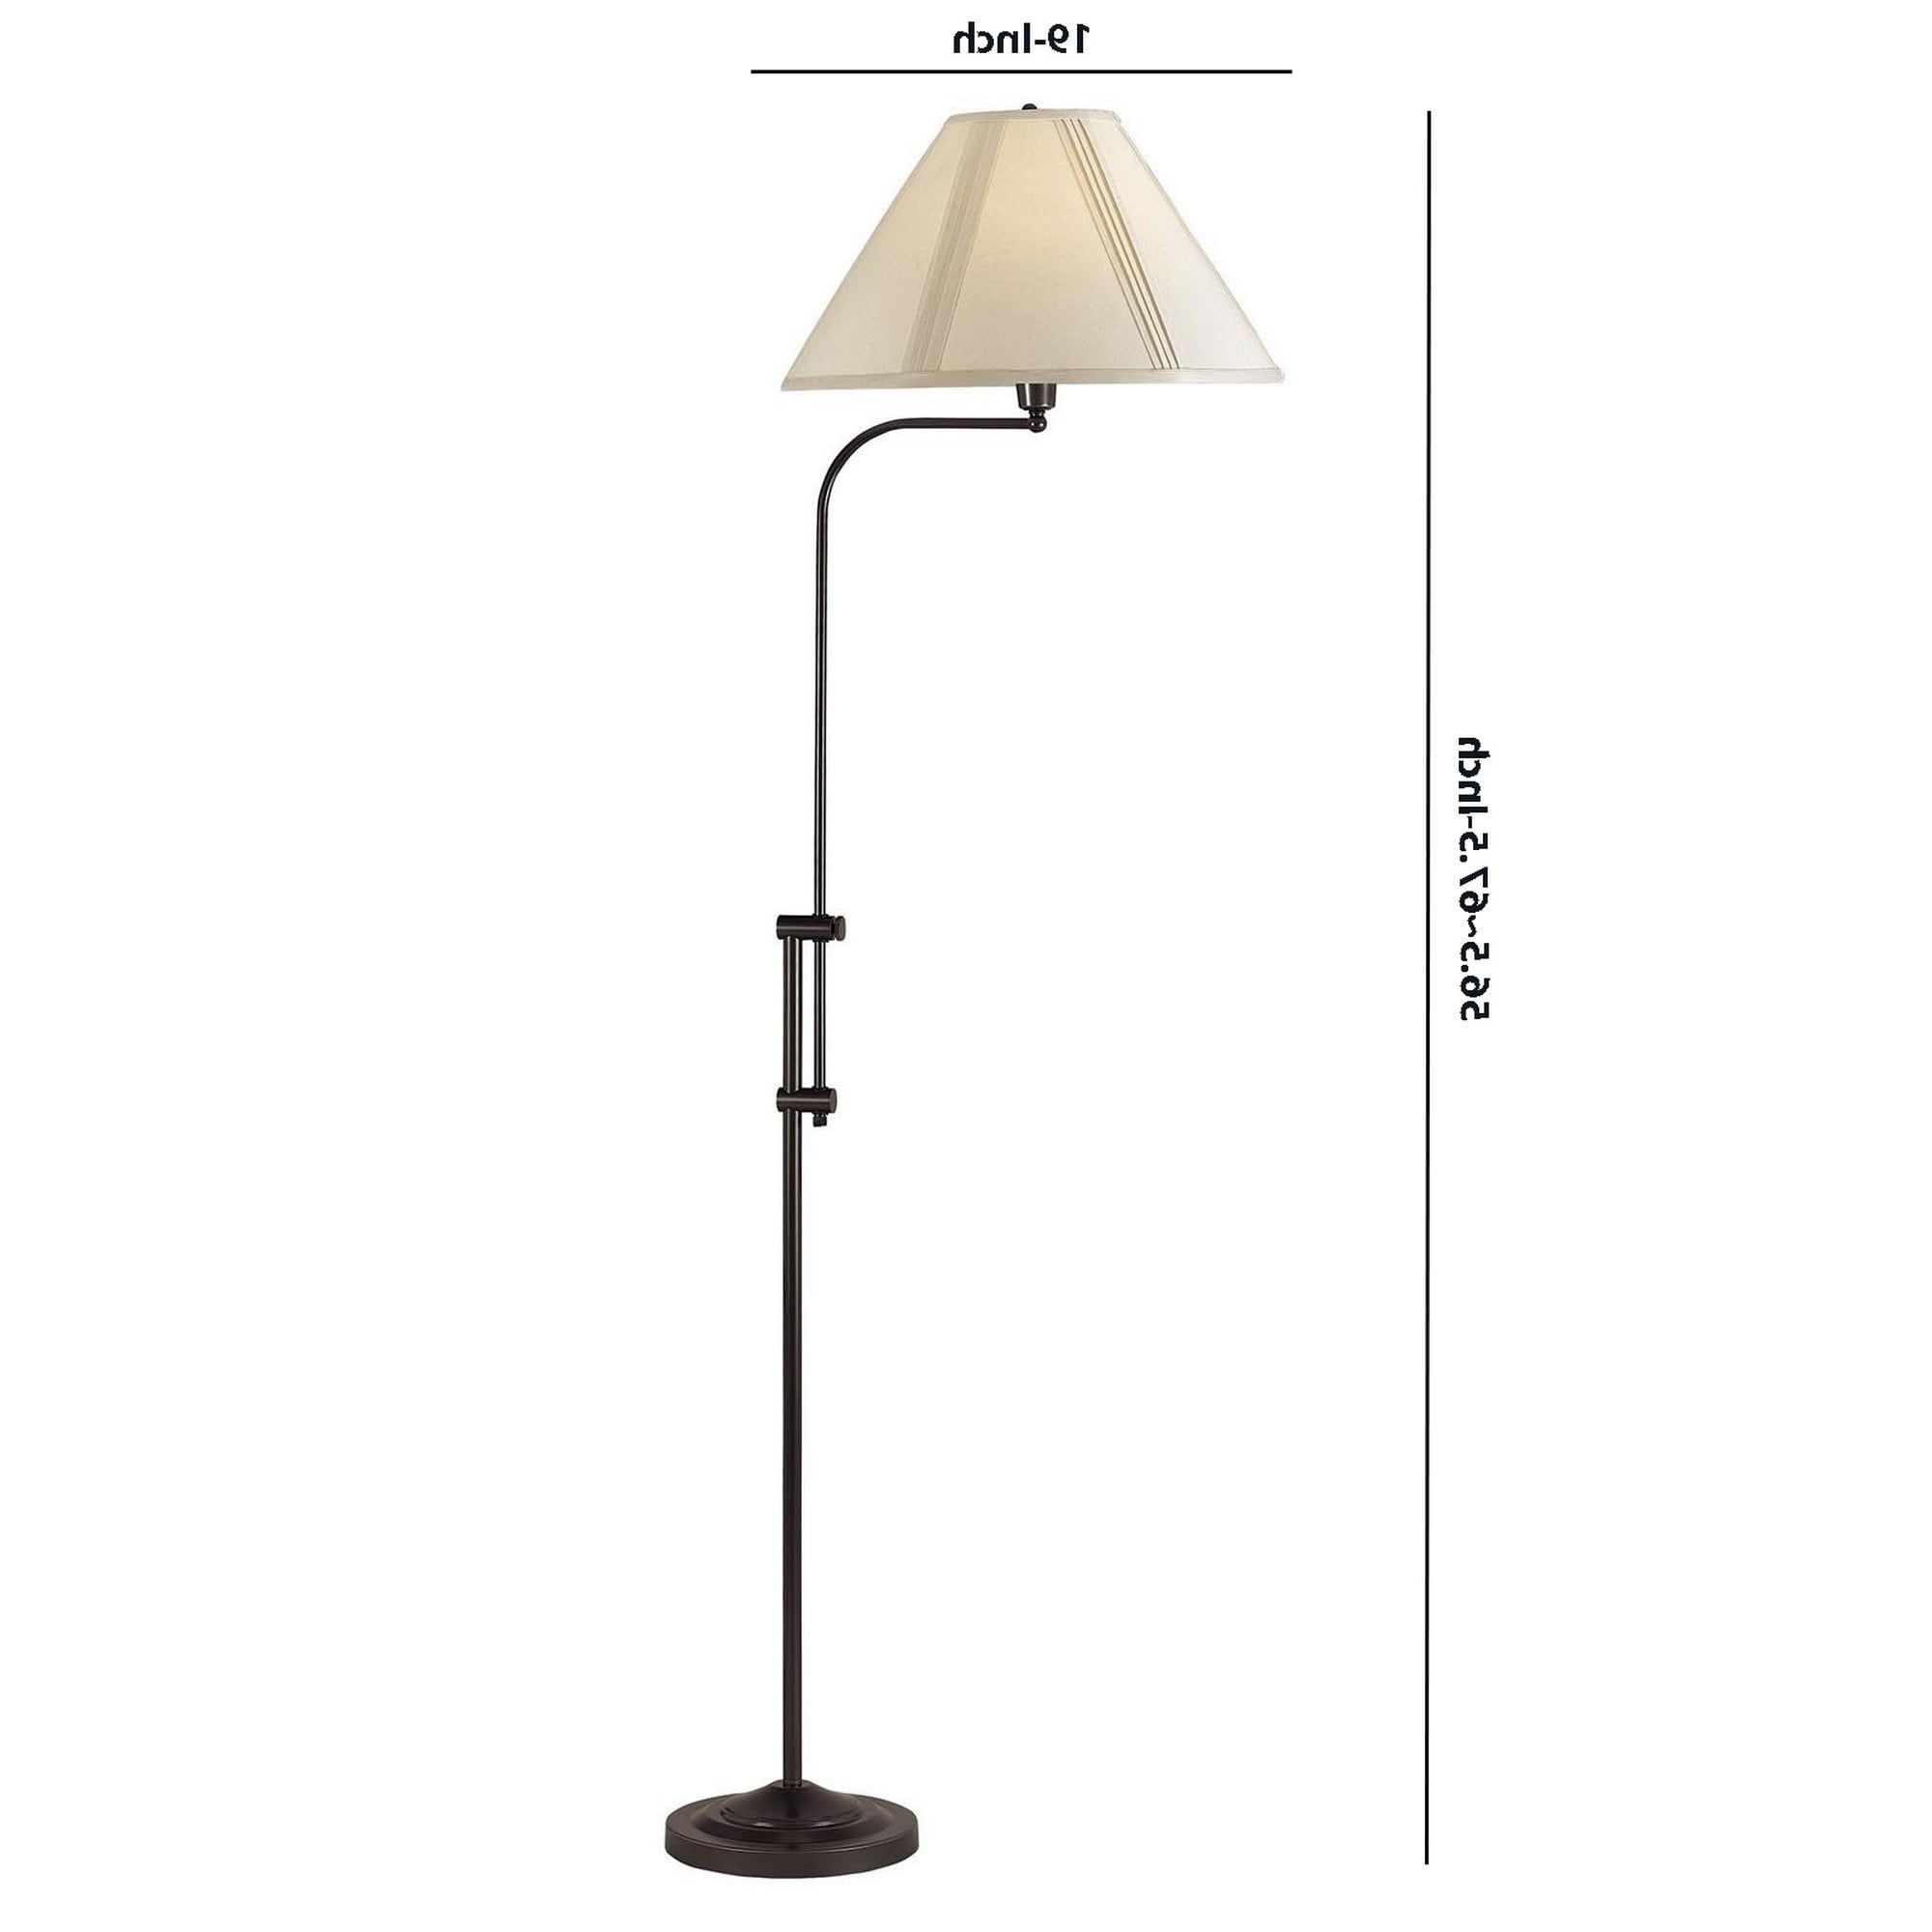 3 Way Metal Floor Lamp With And Adjustable Height Mechanism, Bronze –  Overstock – 31684760 With Regard To Favorite Adjustable Height Floor Lamps (View 1 of 15)